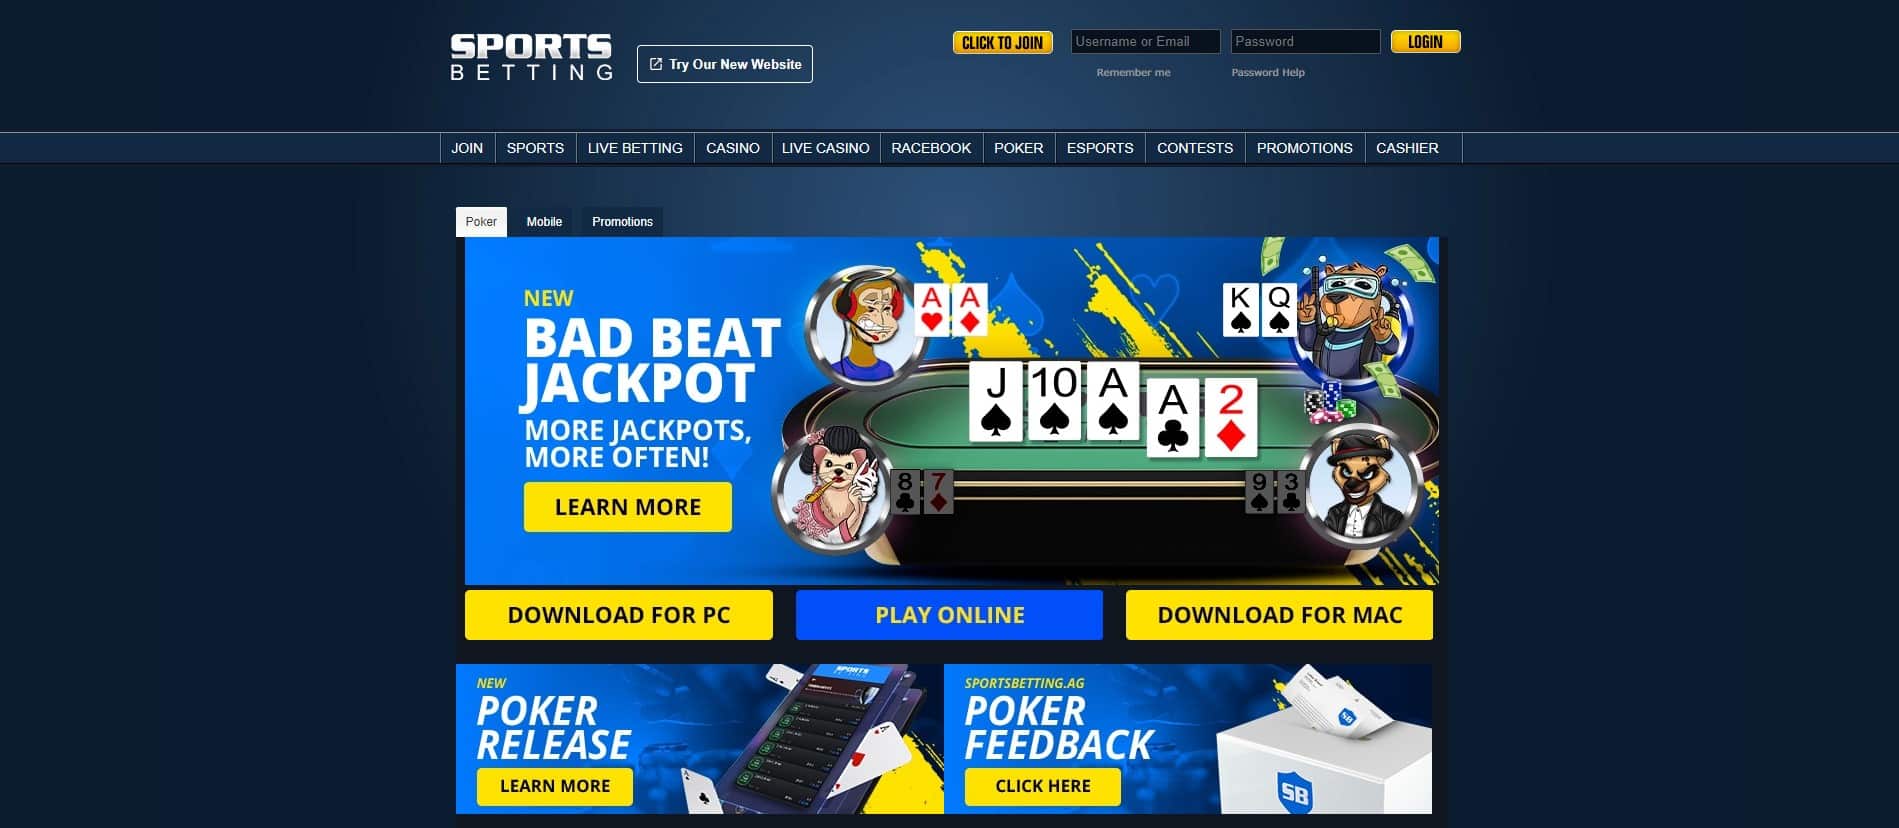 sportsbetting online new york poker